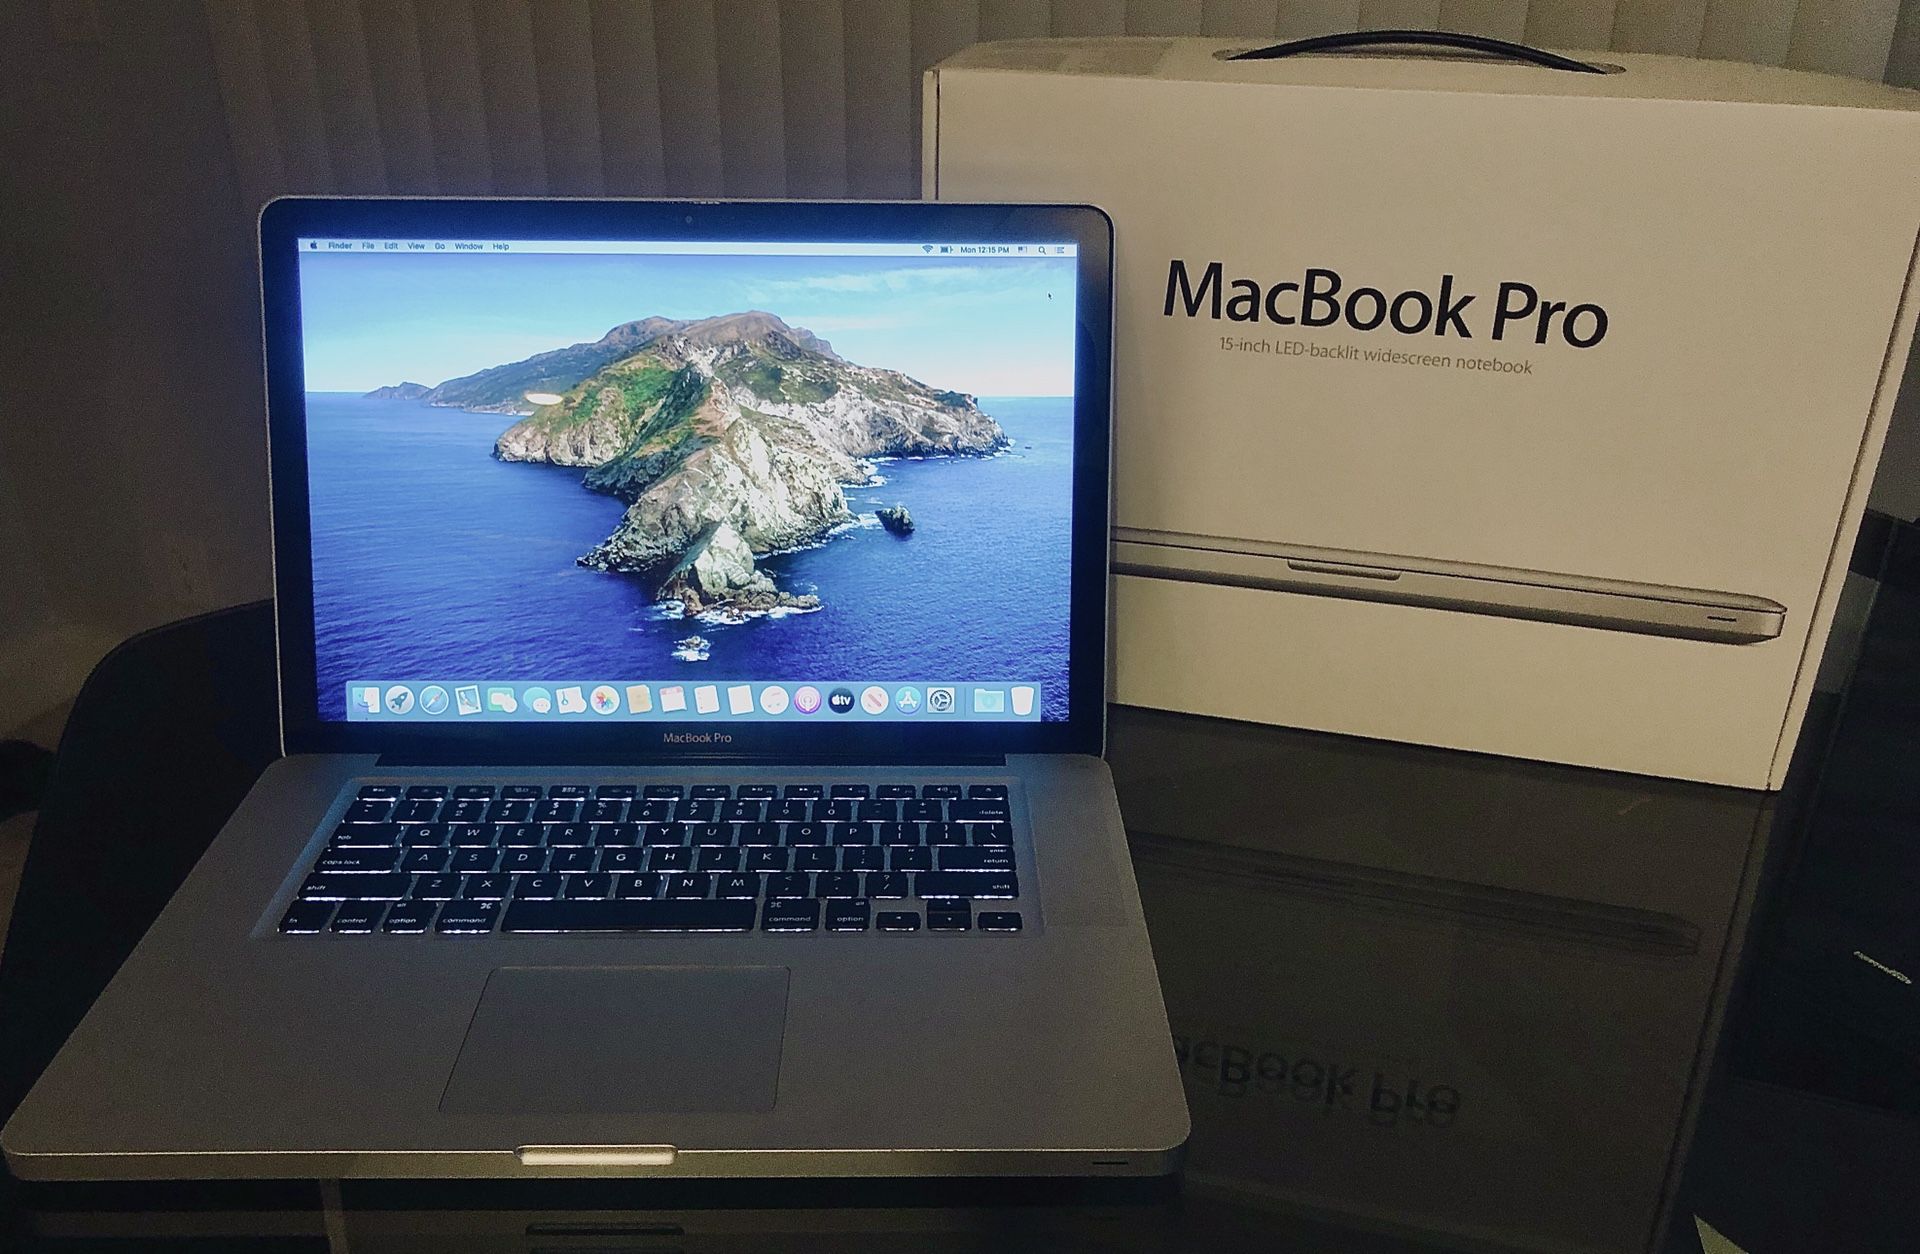 Macbook Pro 15.4-inch